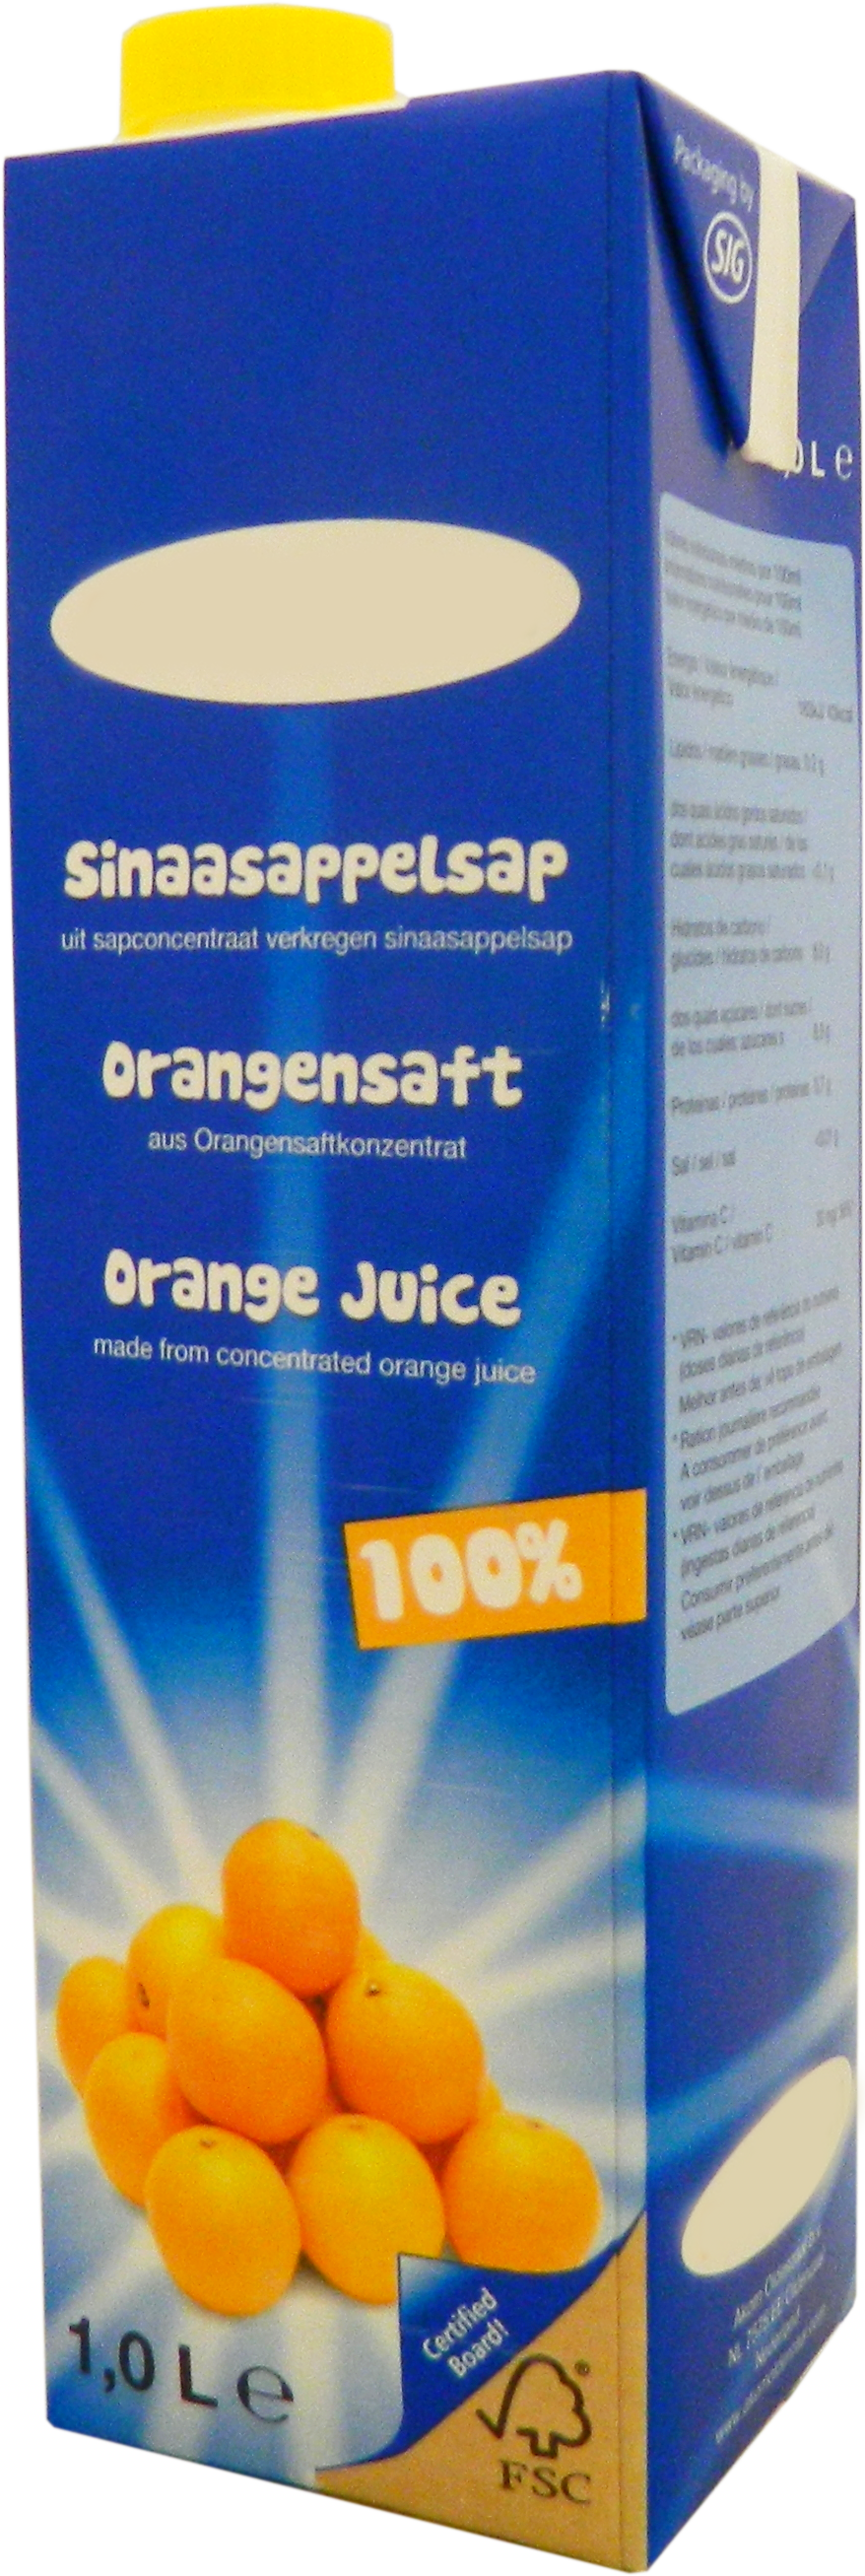 Premium Sinaasappelsap 1,0 liter